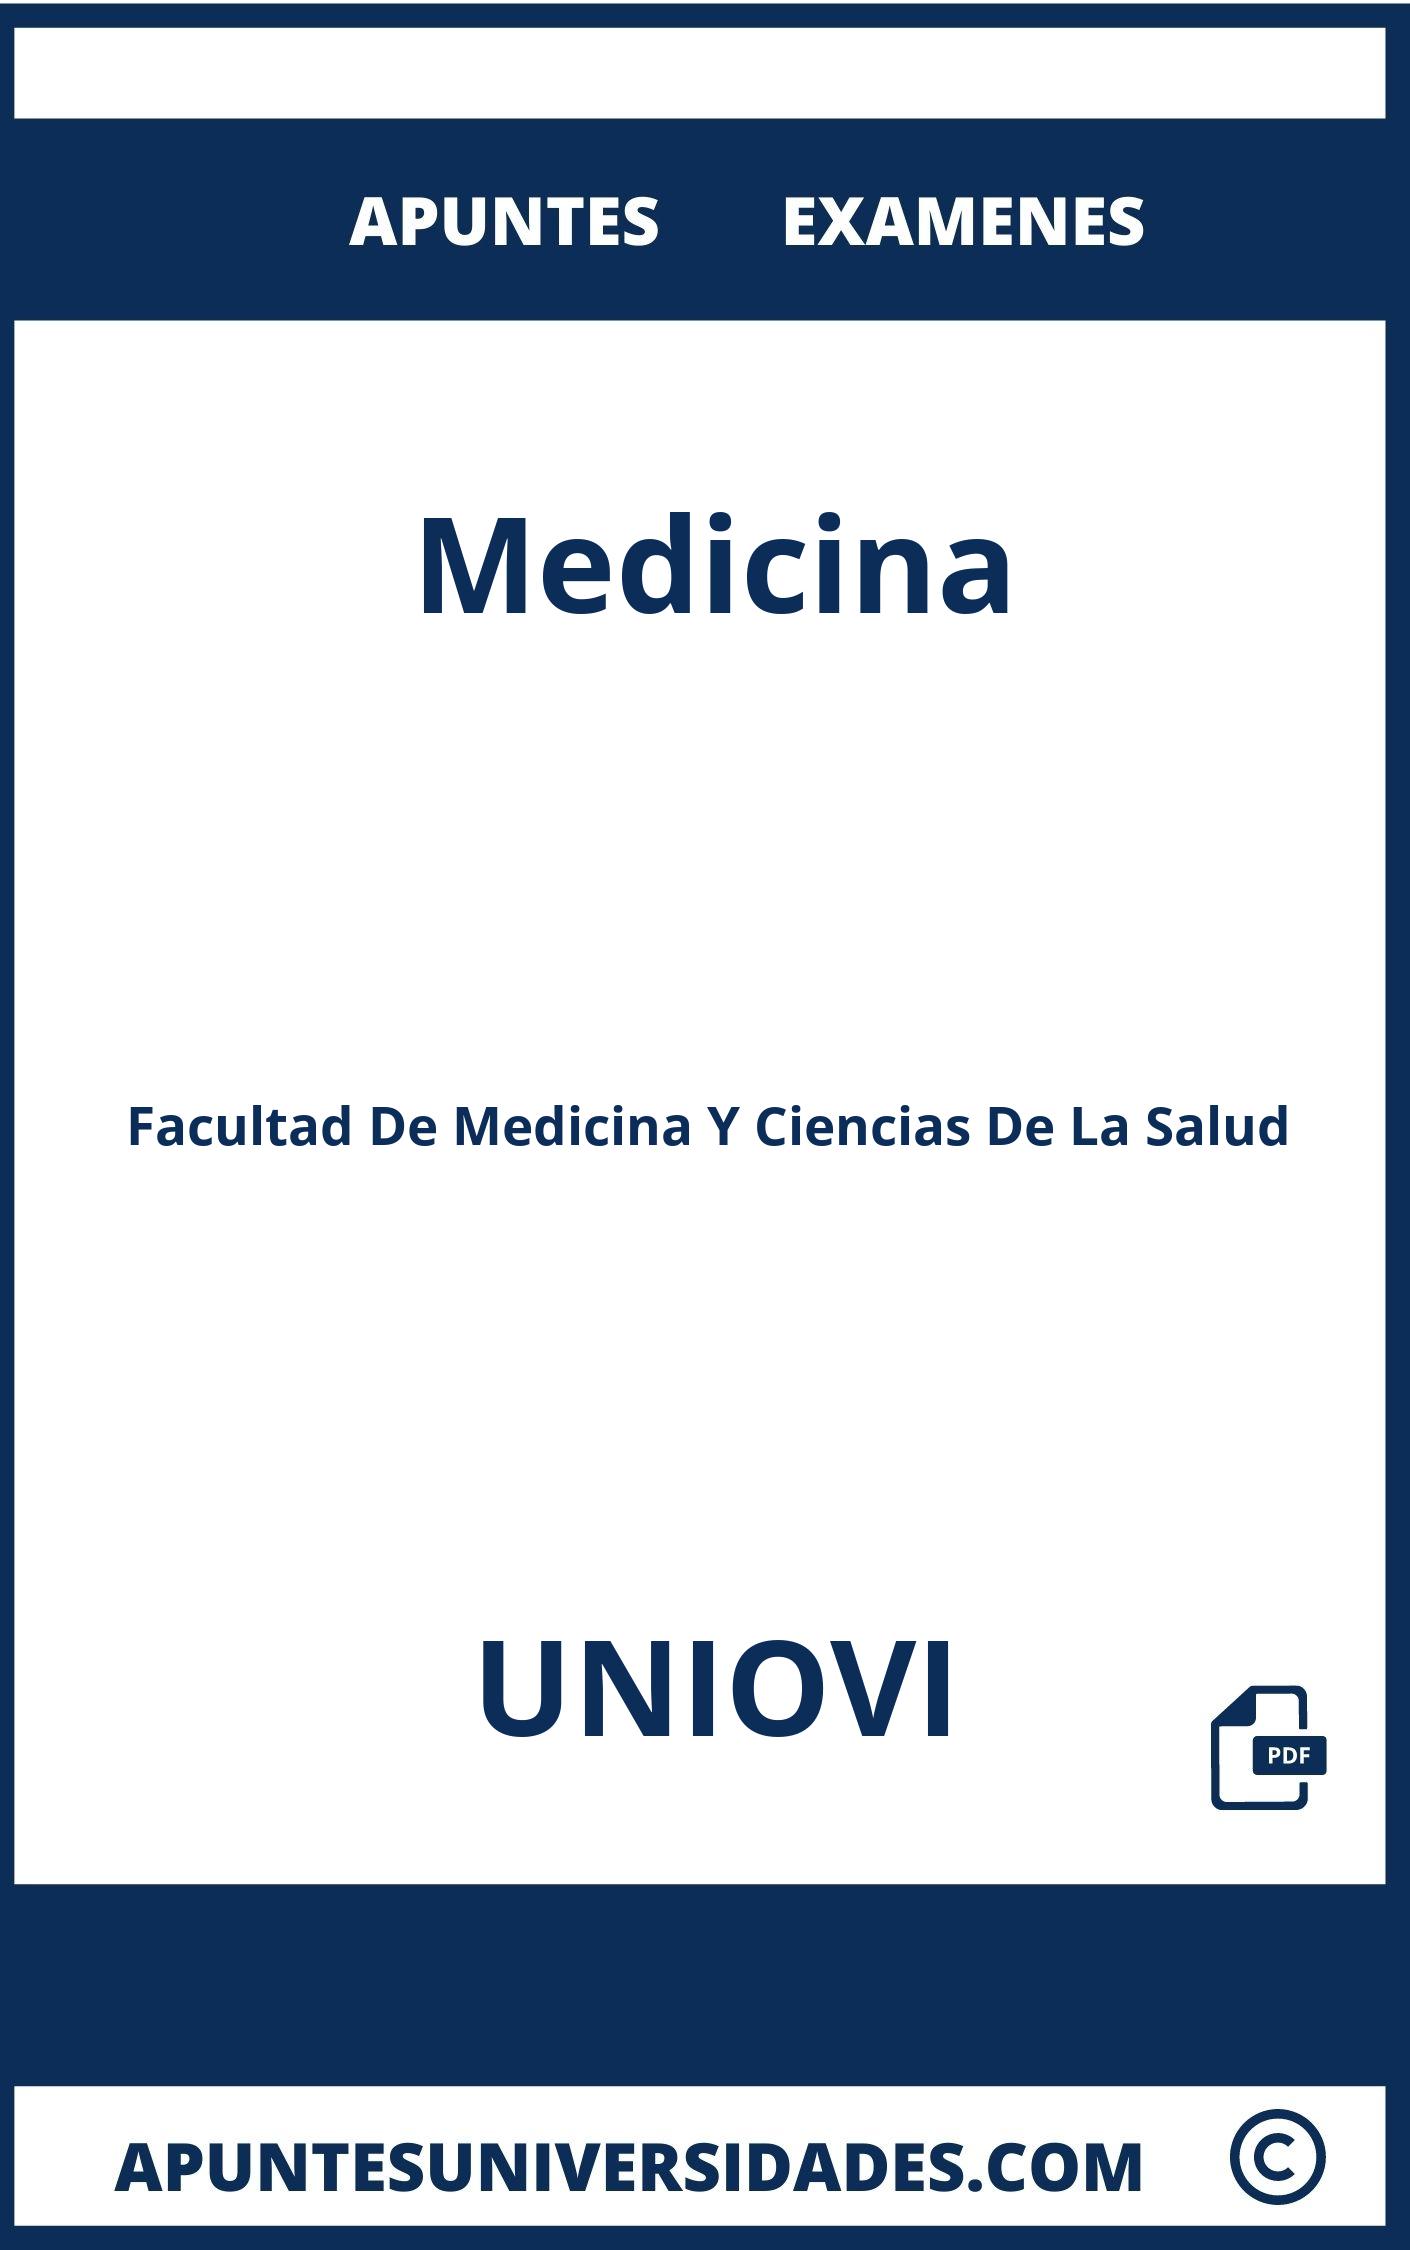 Apuntes y Examenes de Medicina UNIOVI